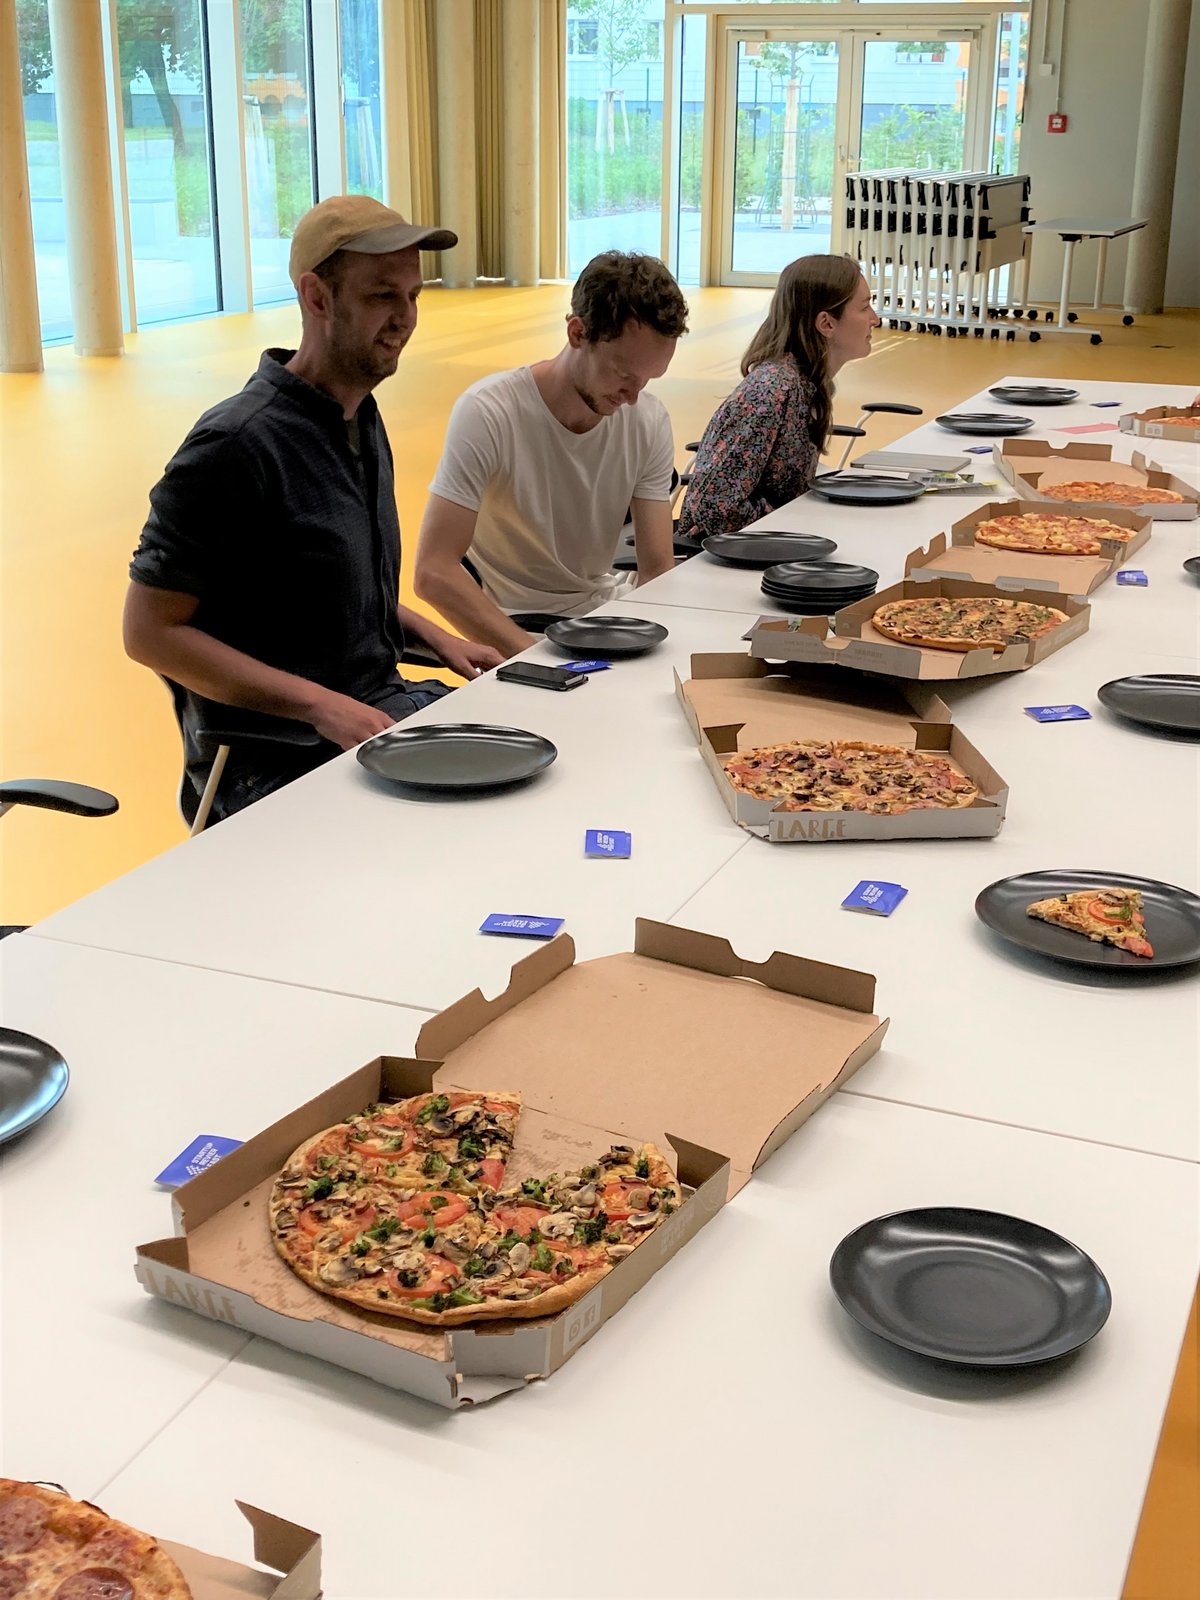 Menschen sitzen am Tisch, sprechen und essen Pizza